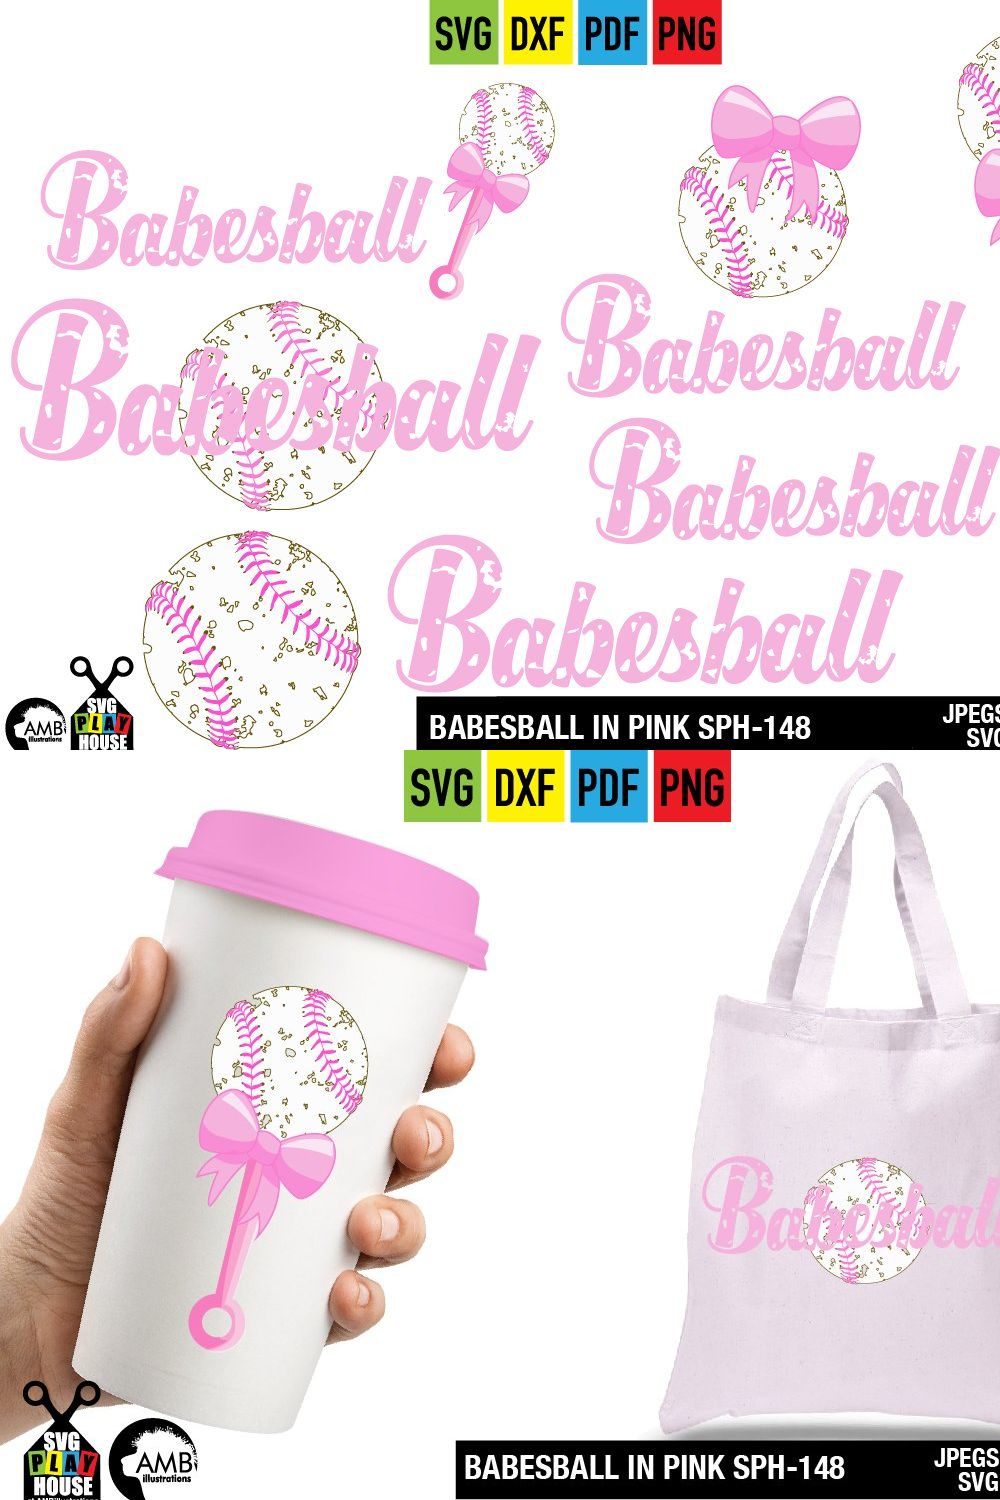 Baseball girls, babesball SPH-148 pinterest preview image.